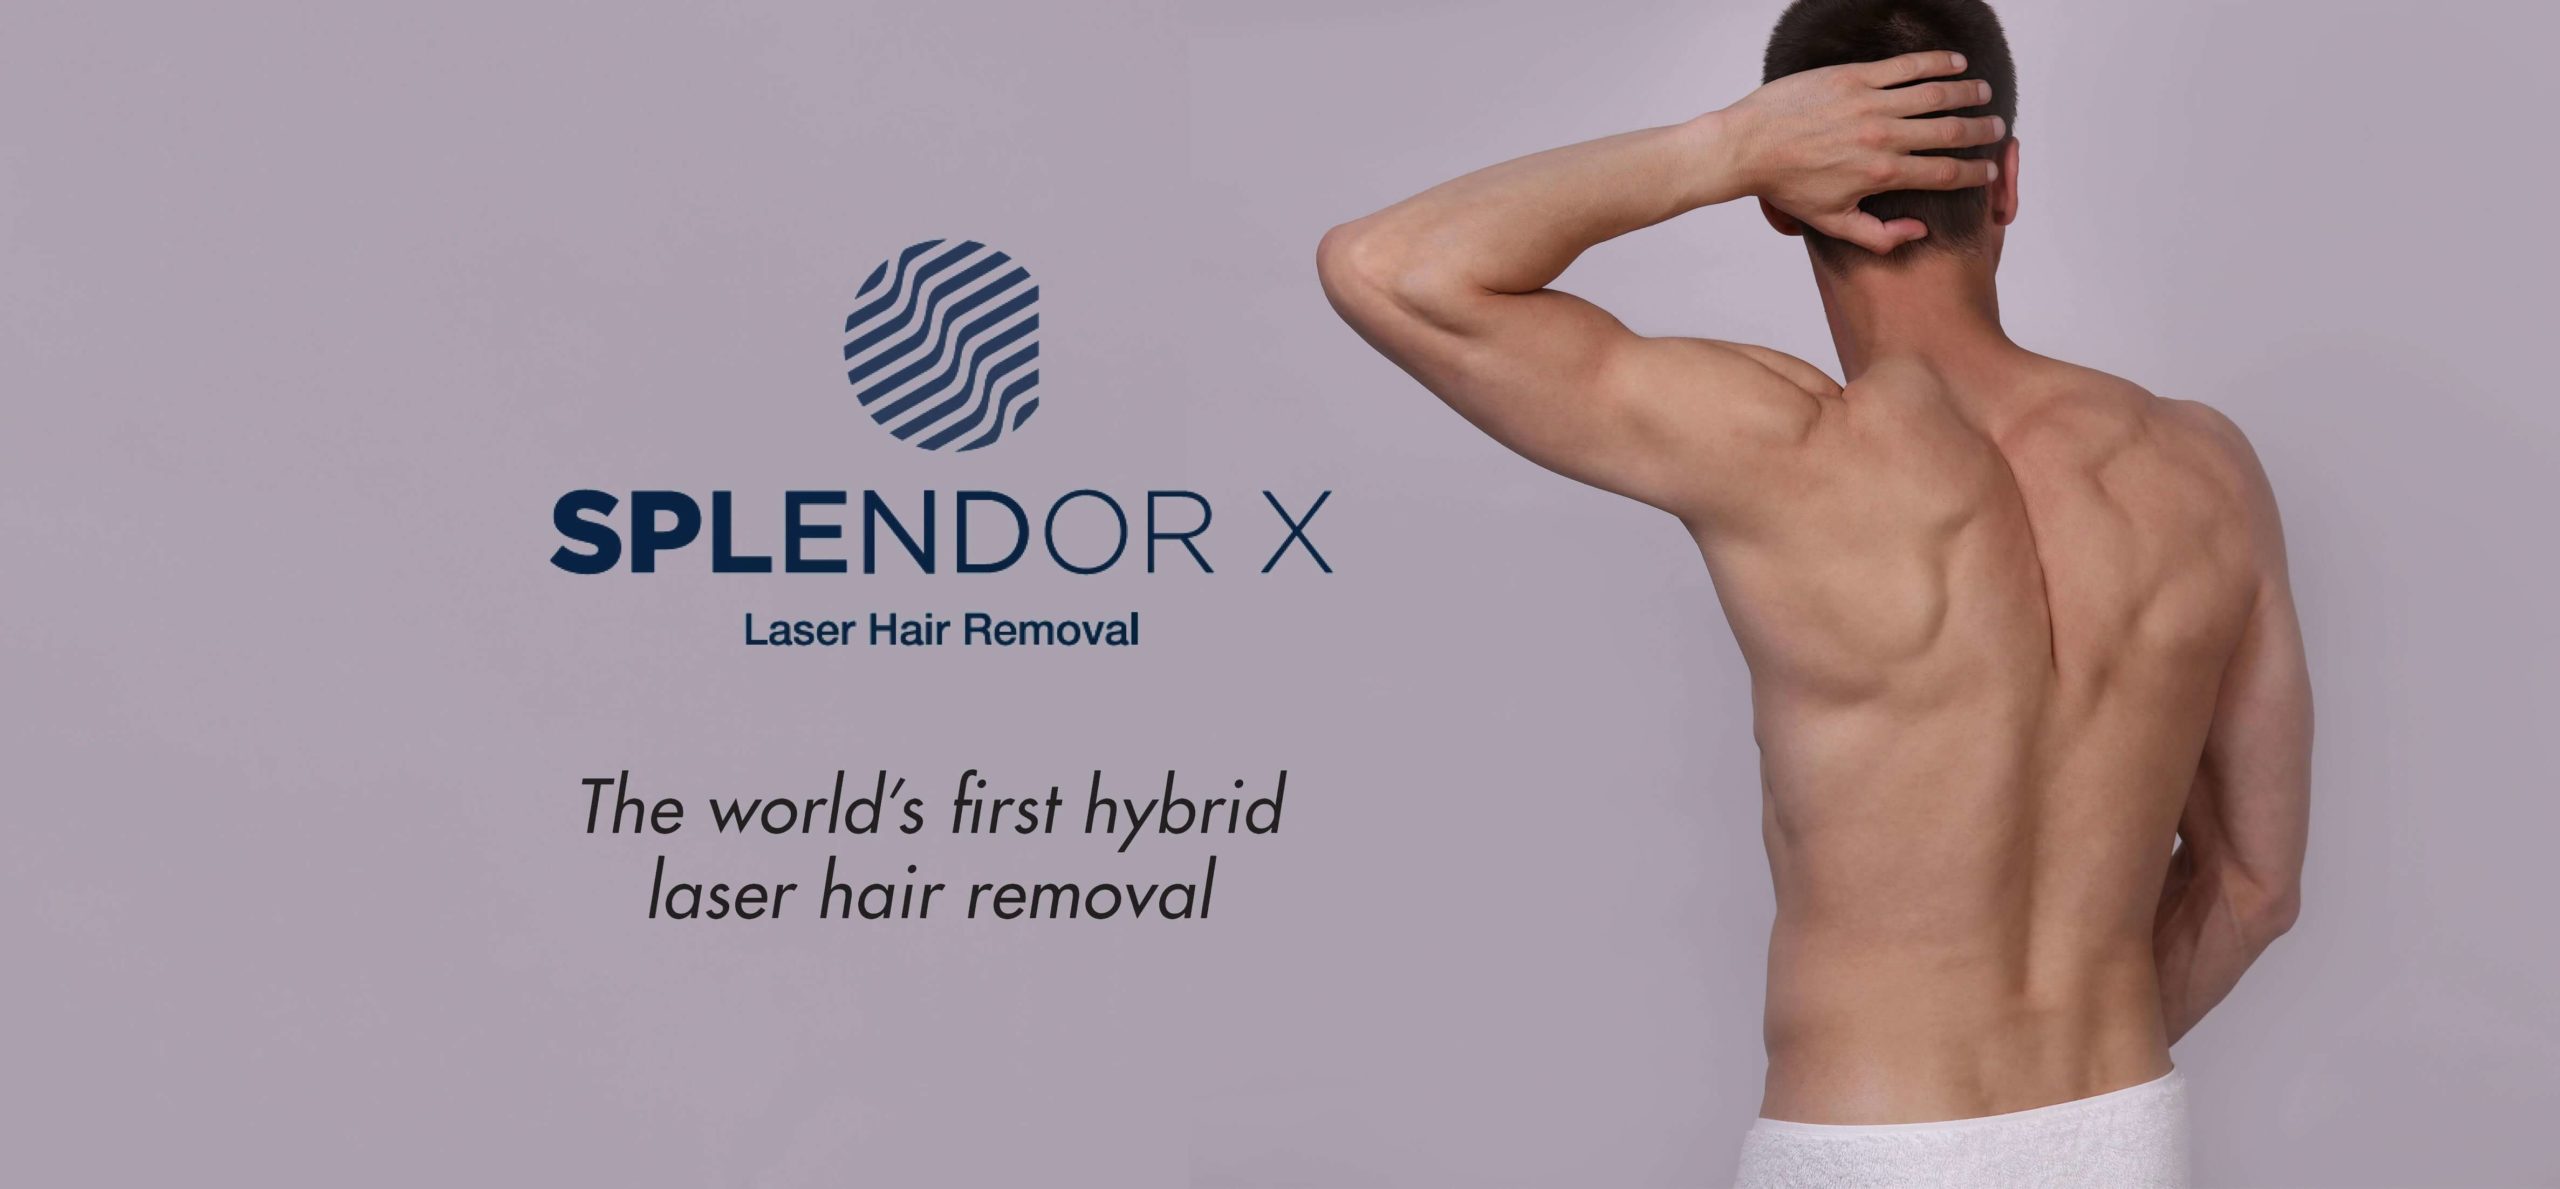 Splendor X Laser Hair Removal